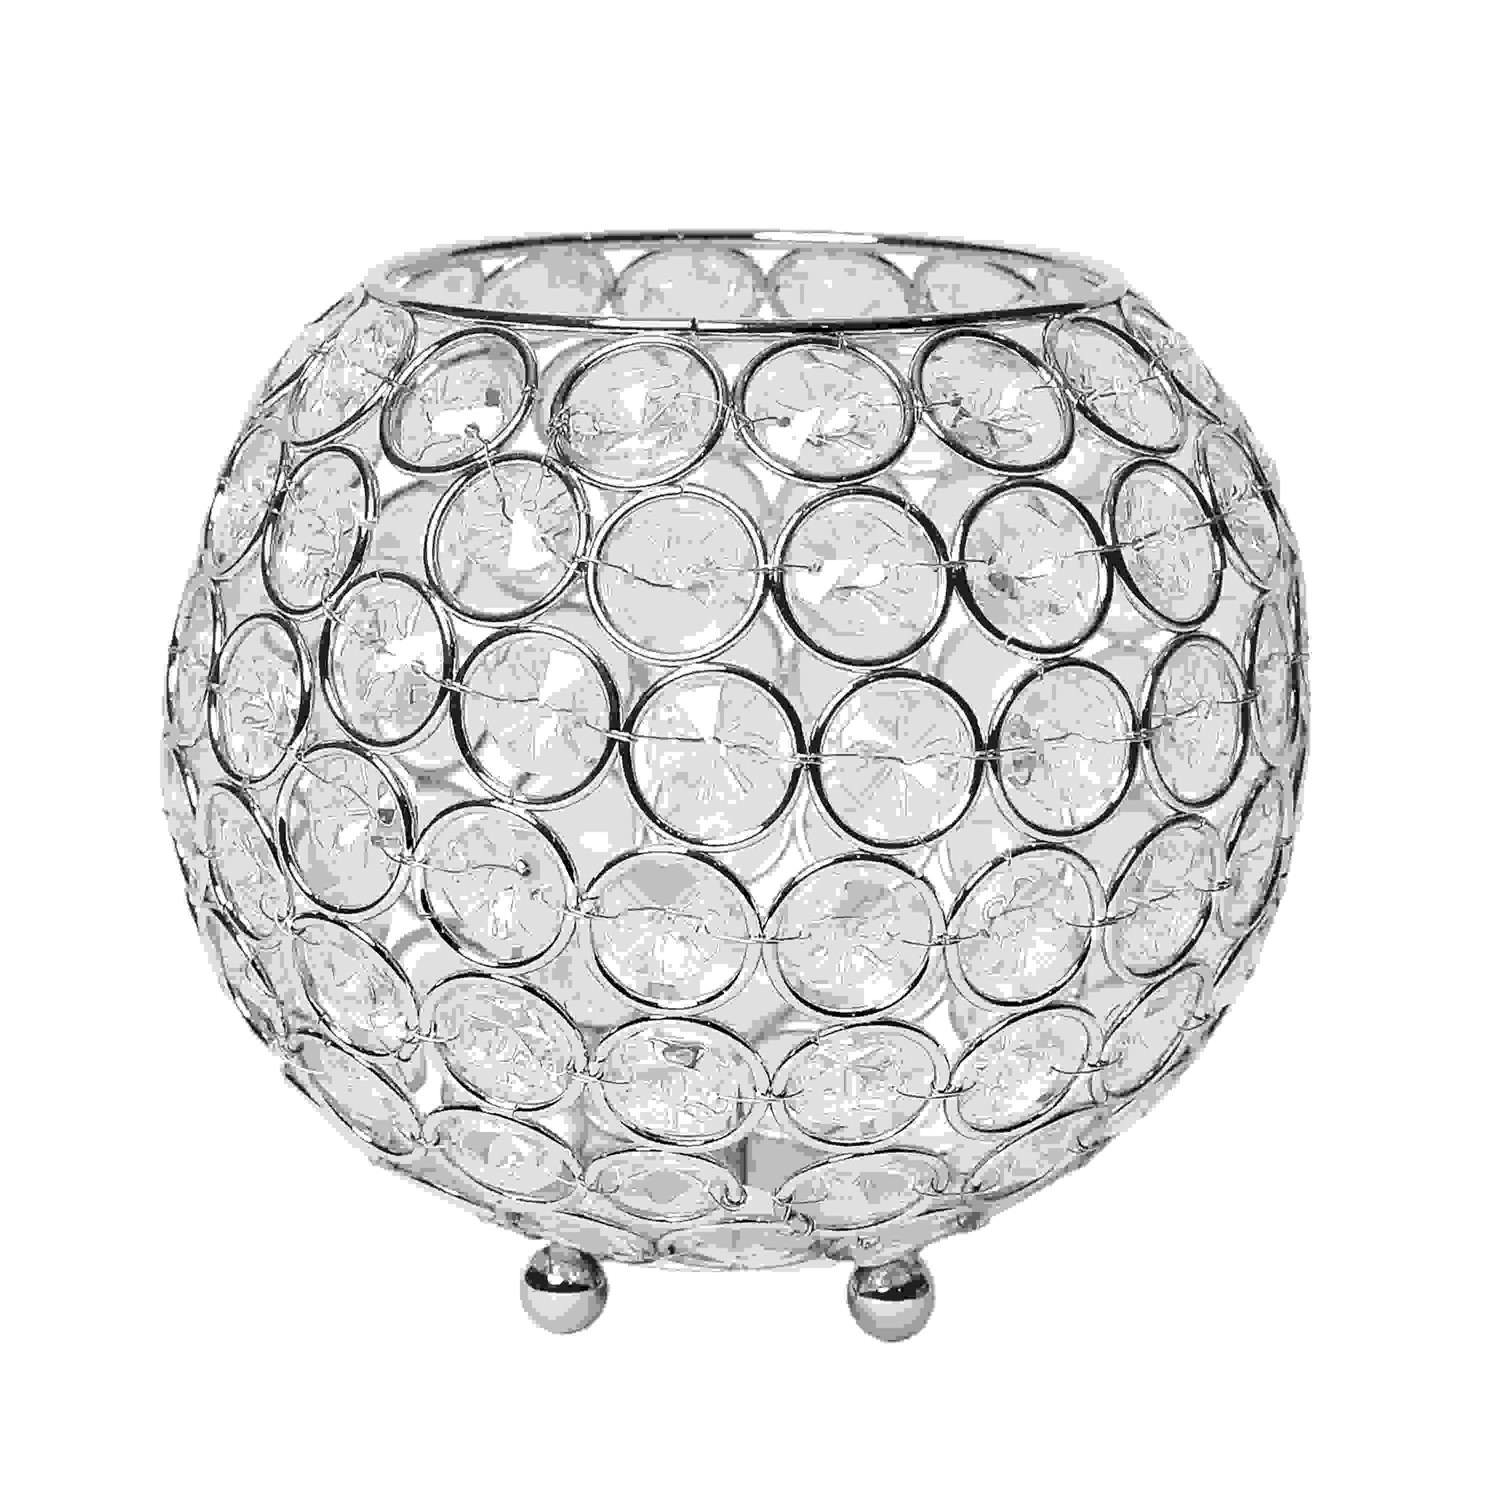 Elegant Designs Elipse Crystal Circular Bowl Candle Holder, Flower Vase, Wedding Centerpiece, Favor, 5.5 Inch, Chrome